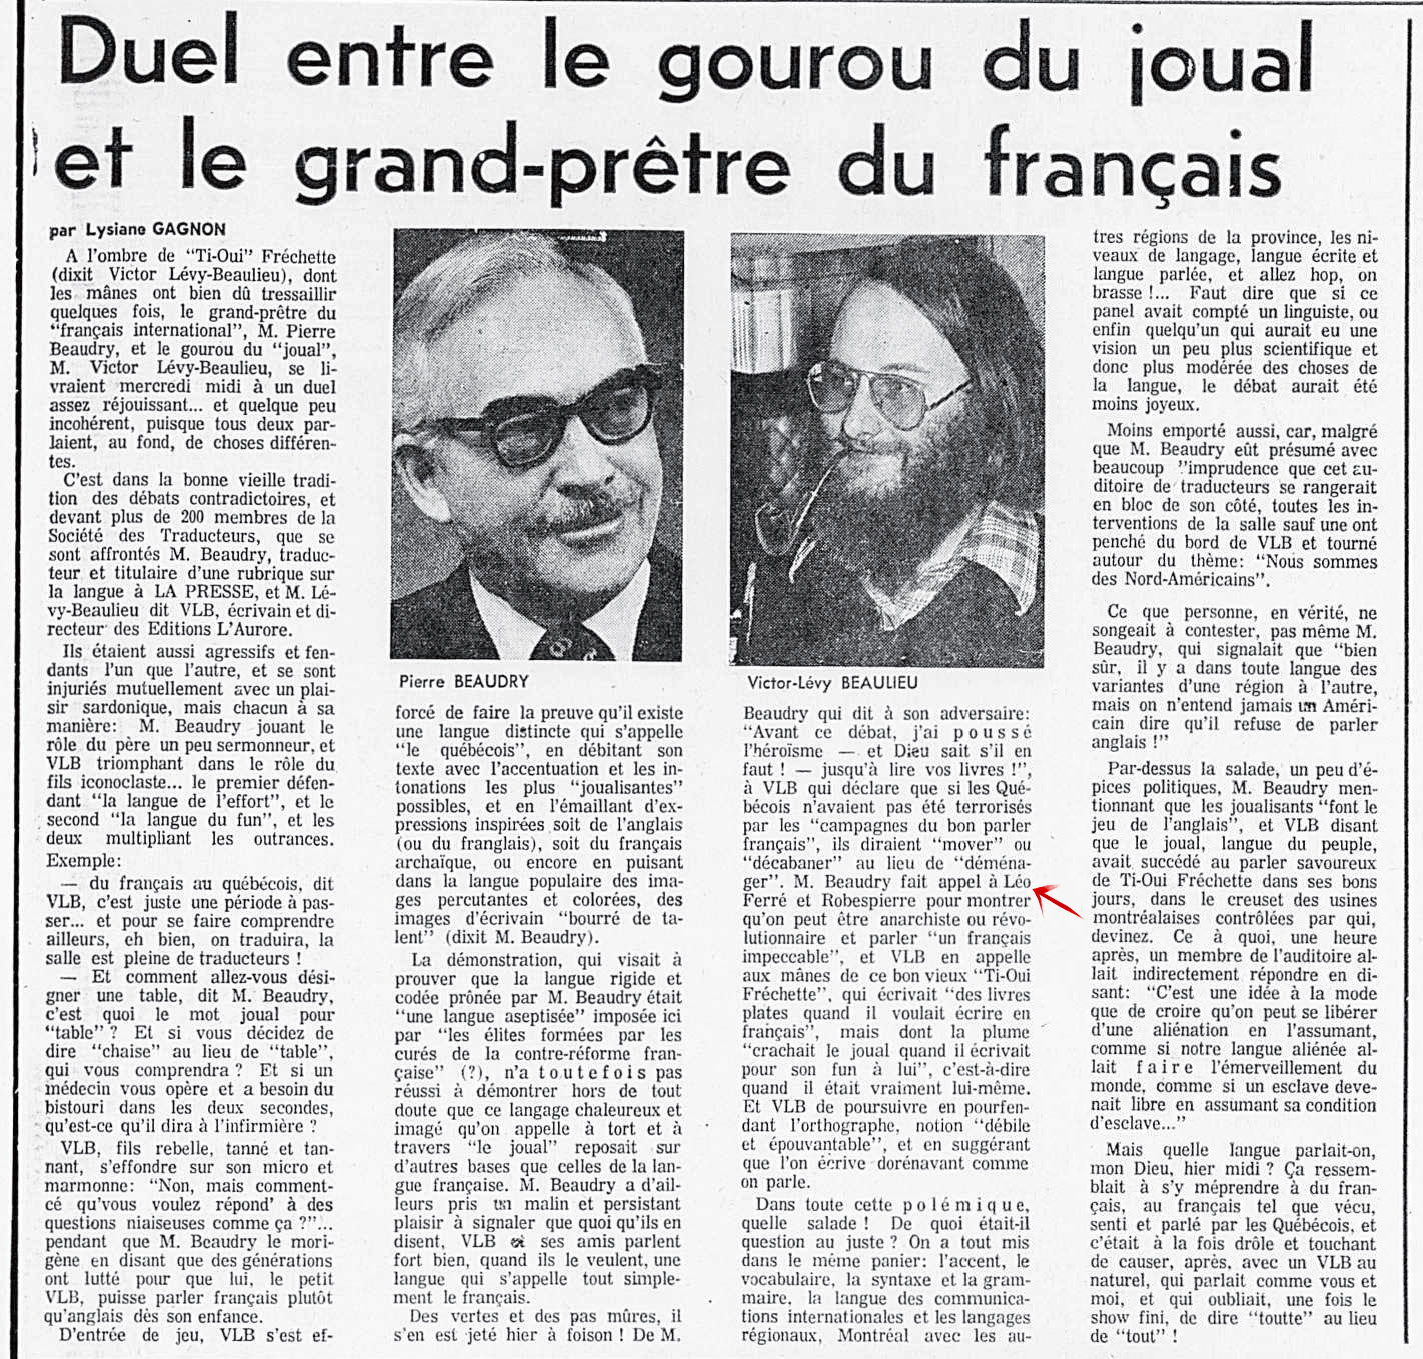 Léo Ferré - La presse, 27 septembre 1974, Cahier D